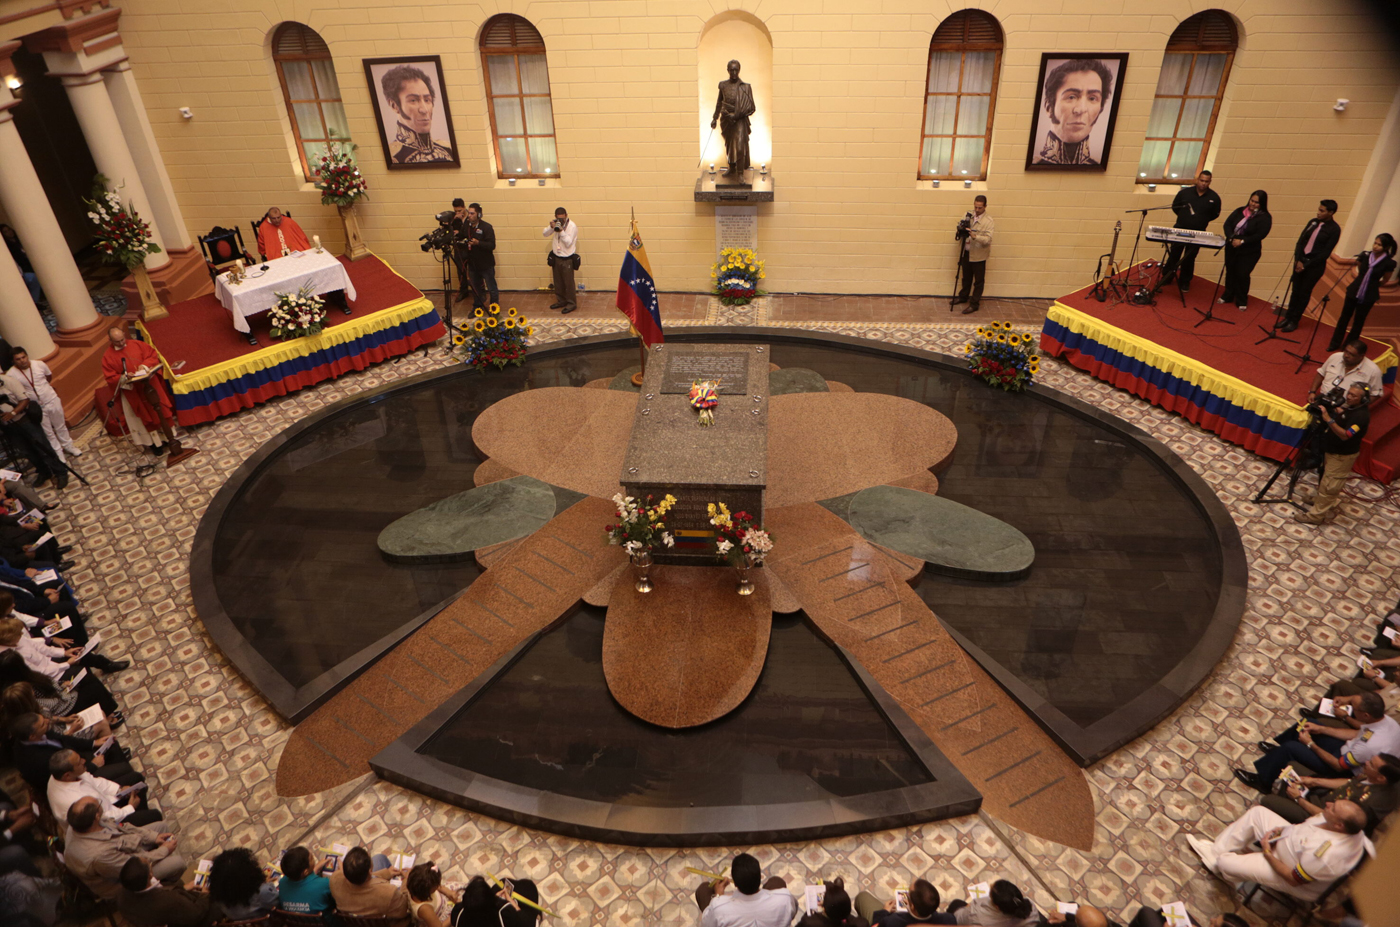 Rendirán honores a Chávez a un mes de su muerte